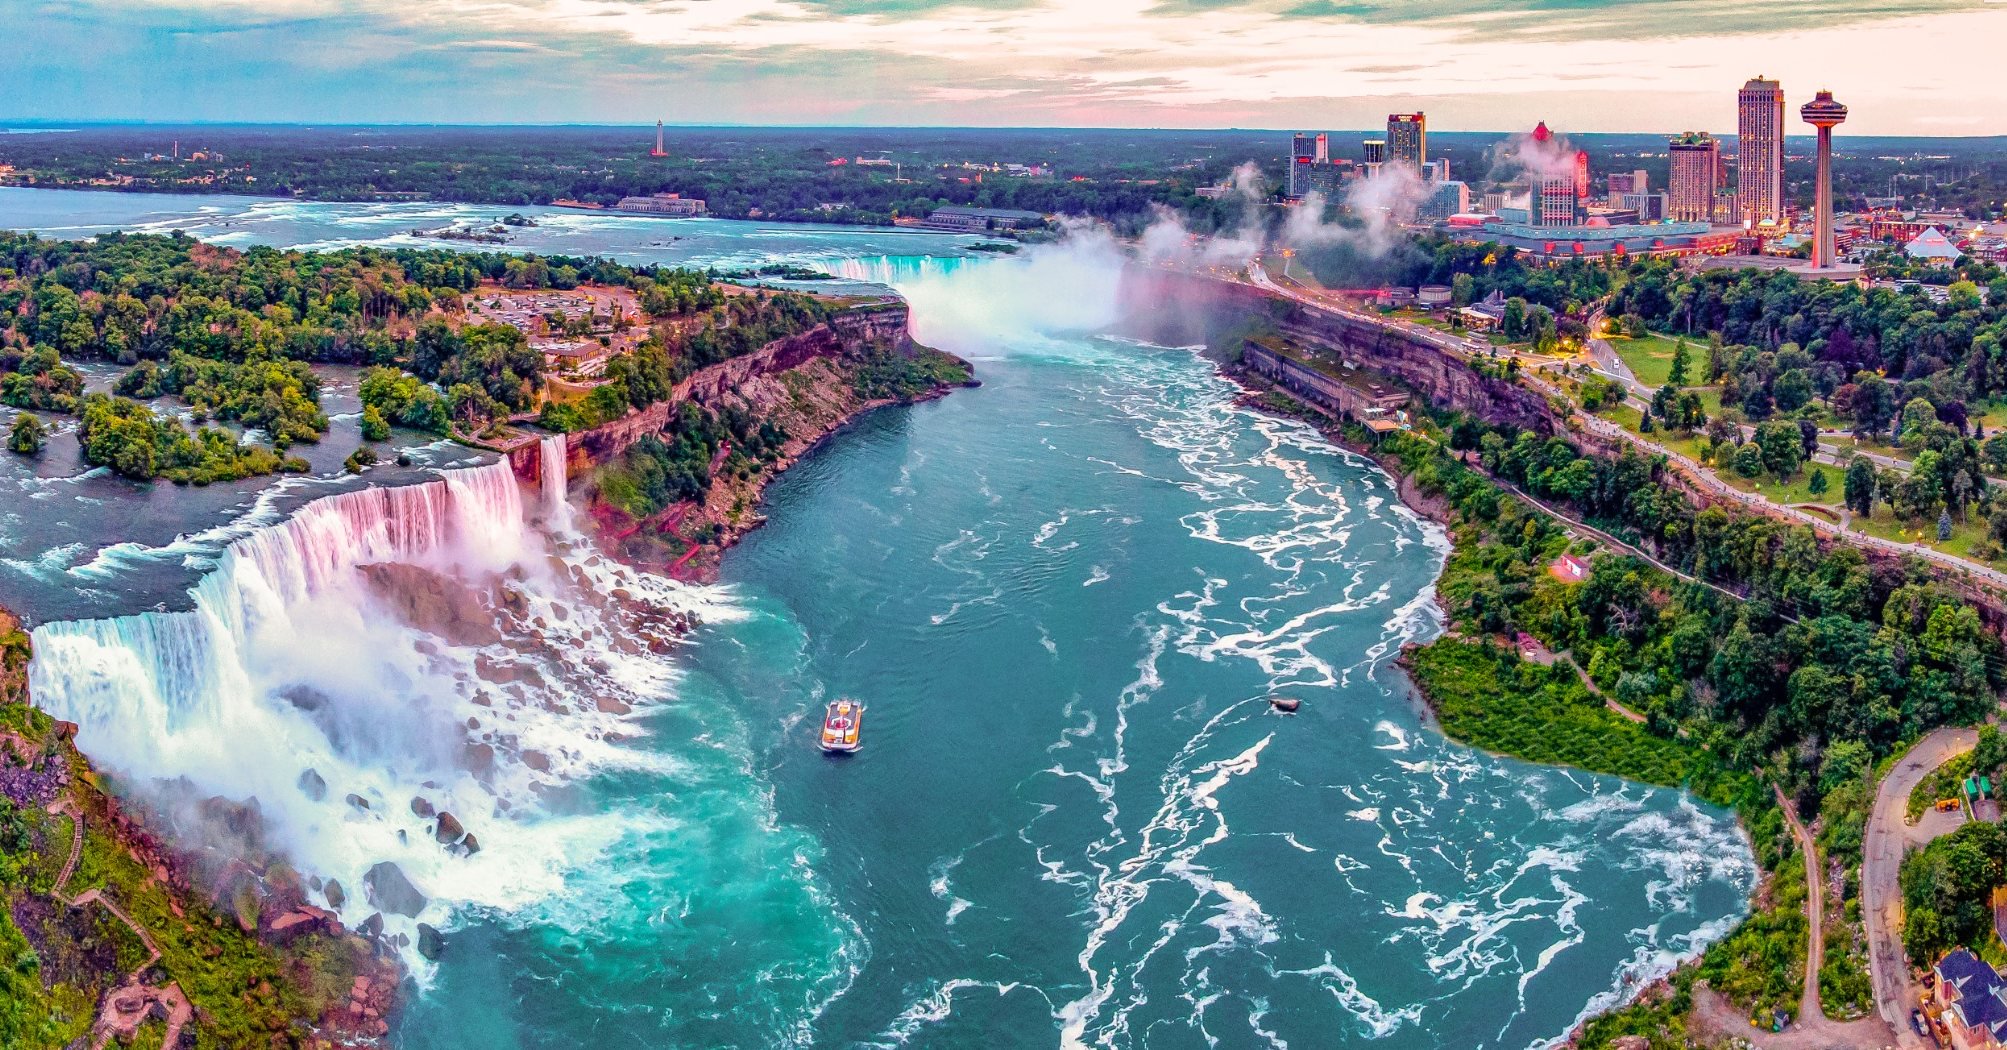 Niagra Falls or Niagara Falls